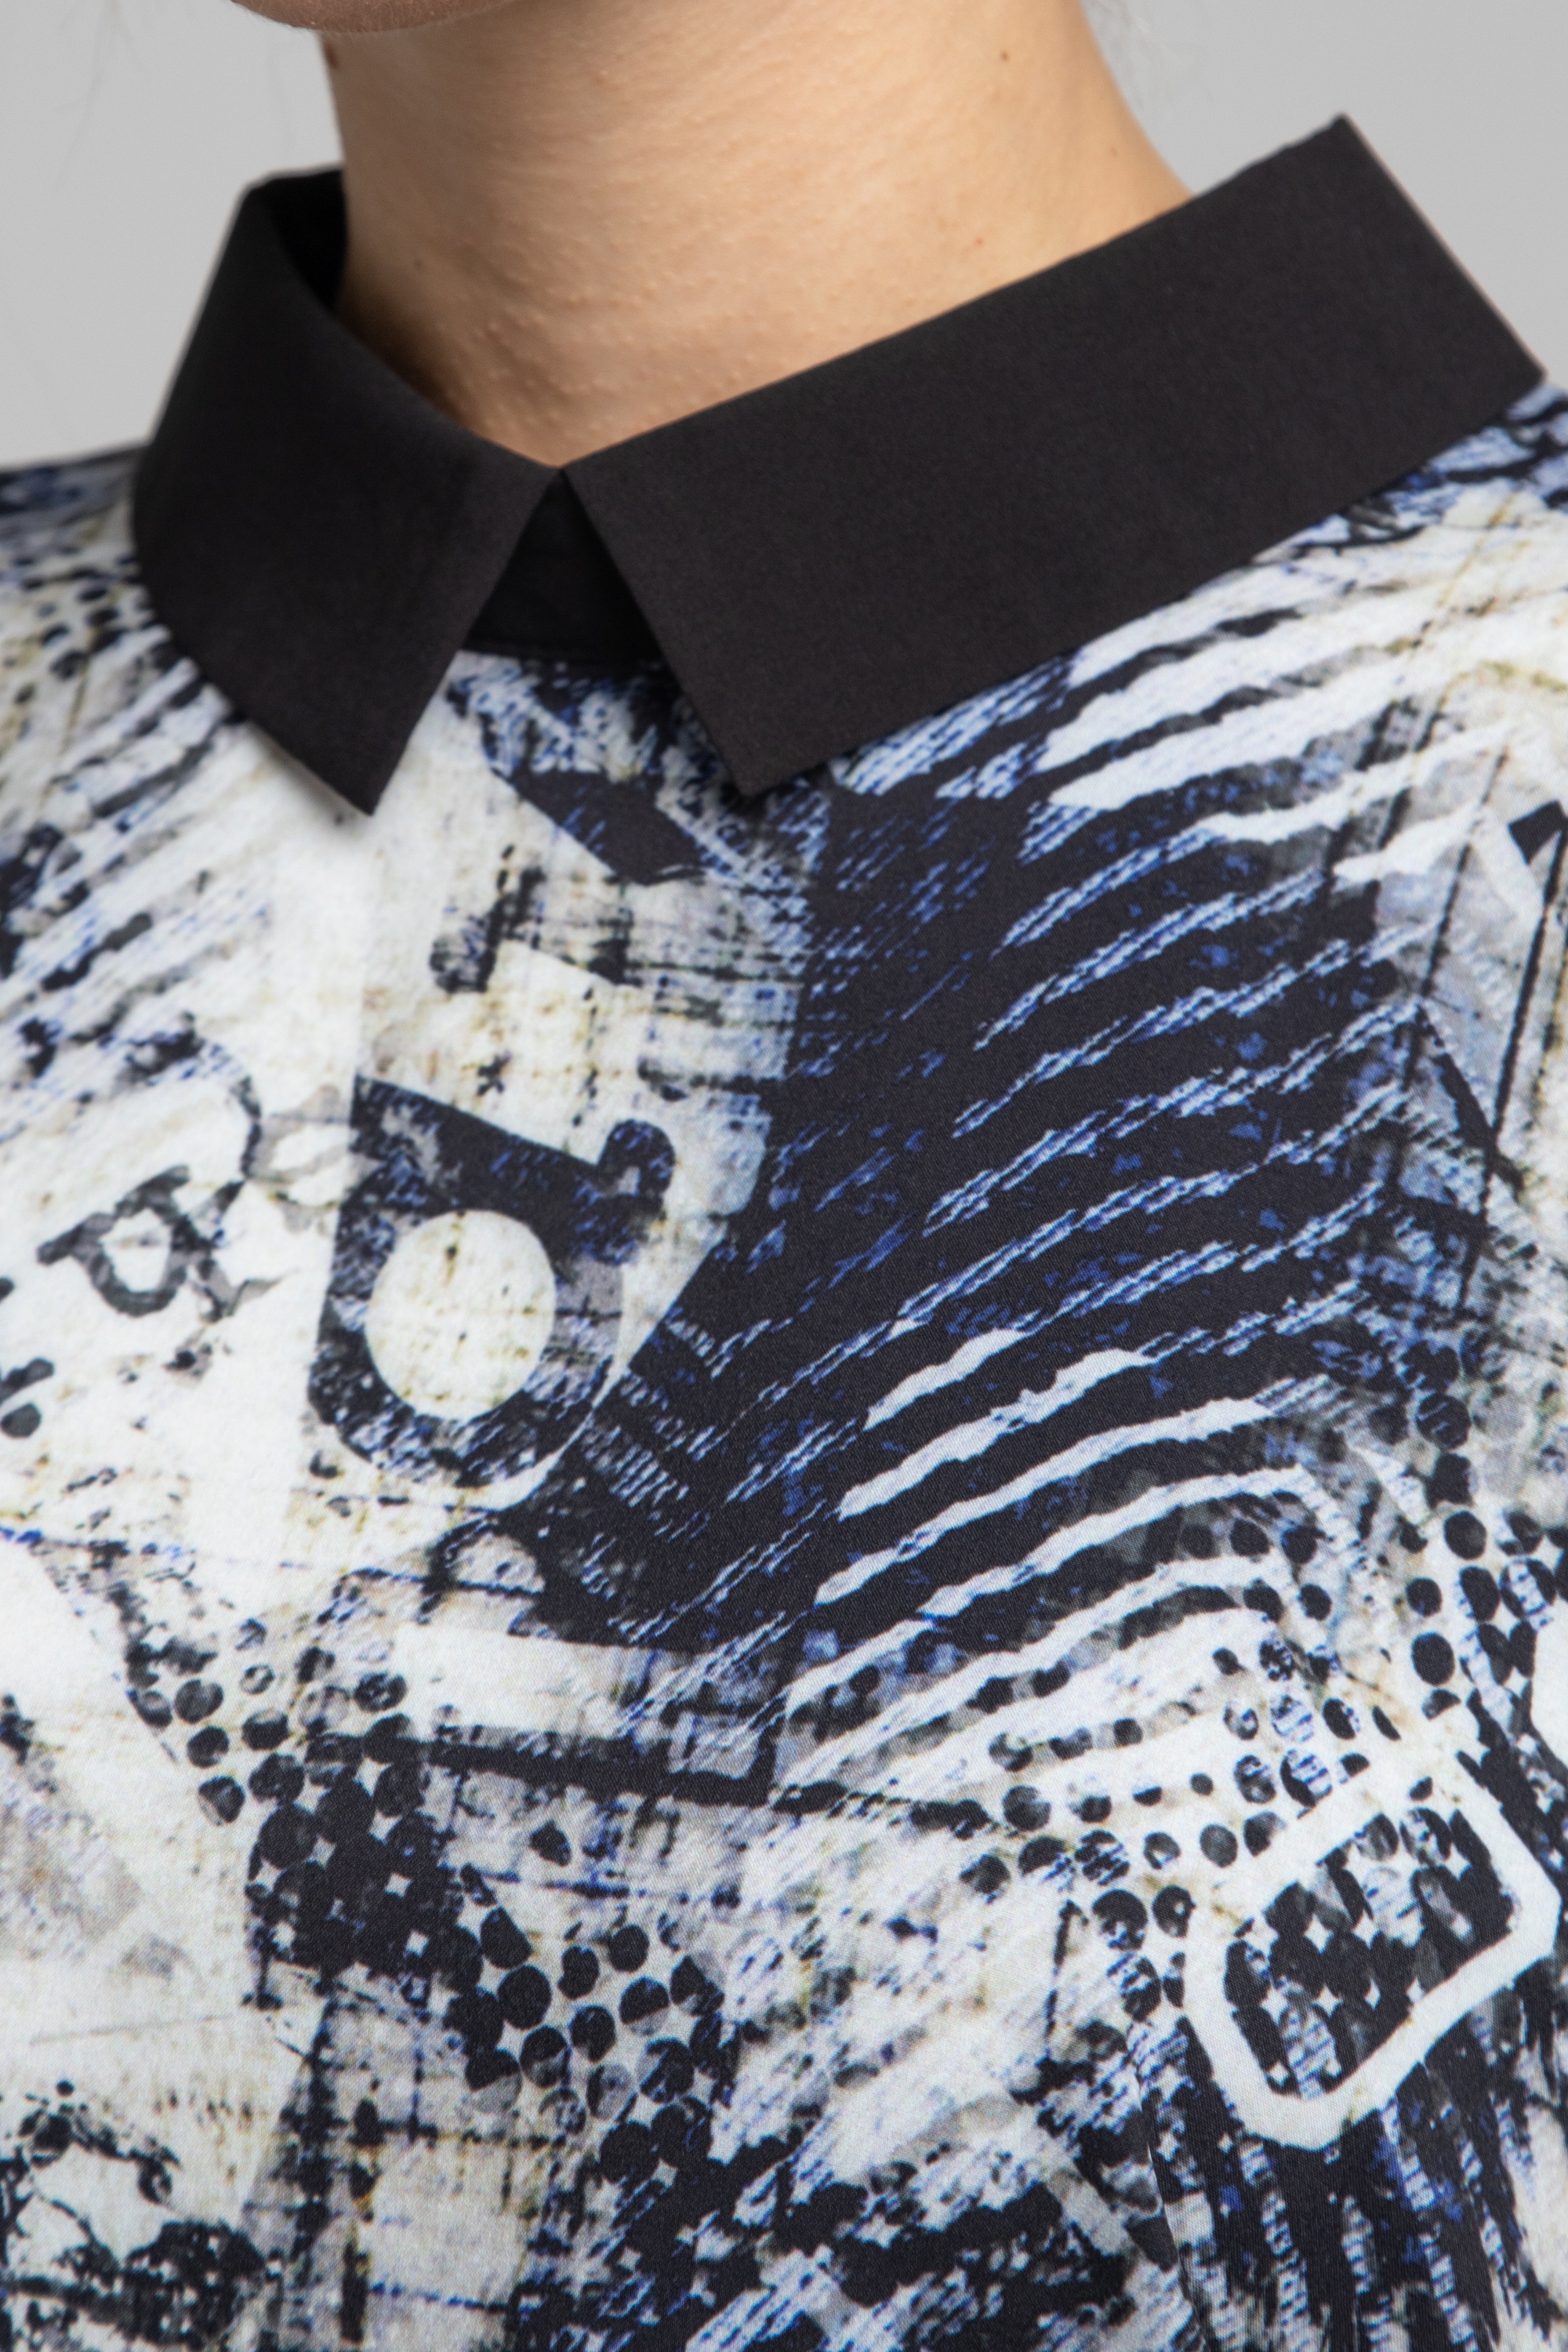 Блуза прямого силуэта с рукавами летучая мышь. 0030-01-27-31-19